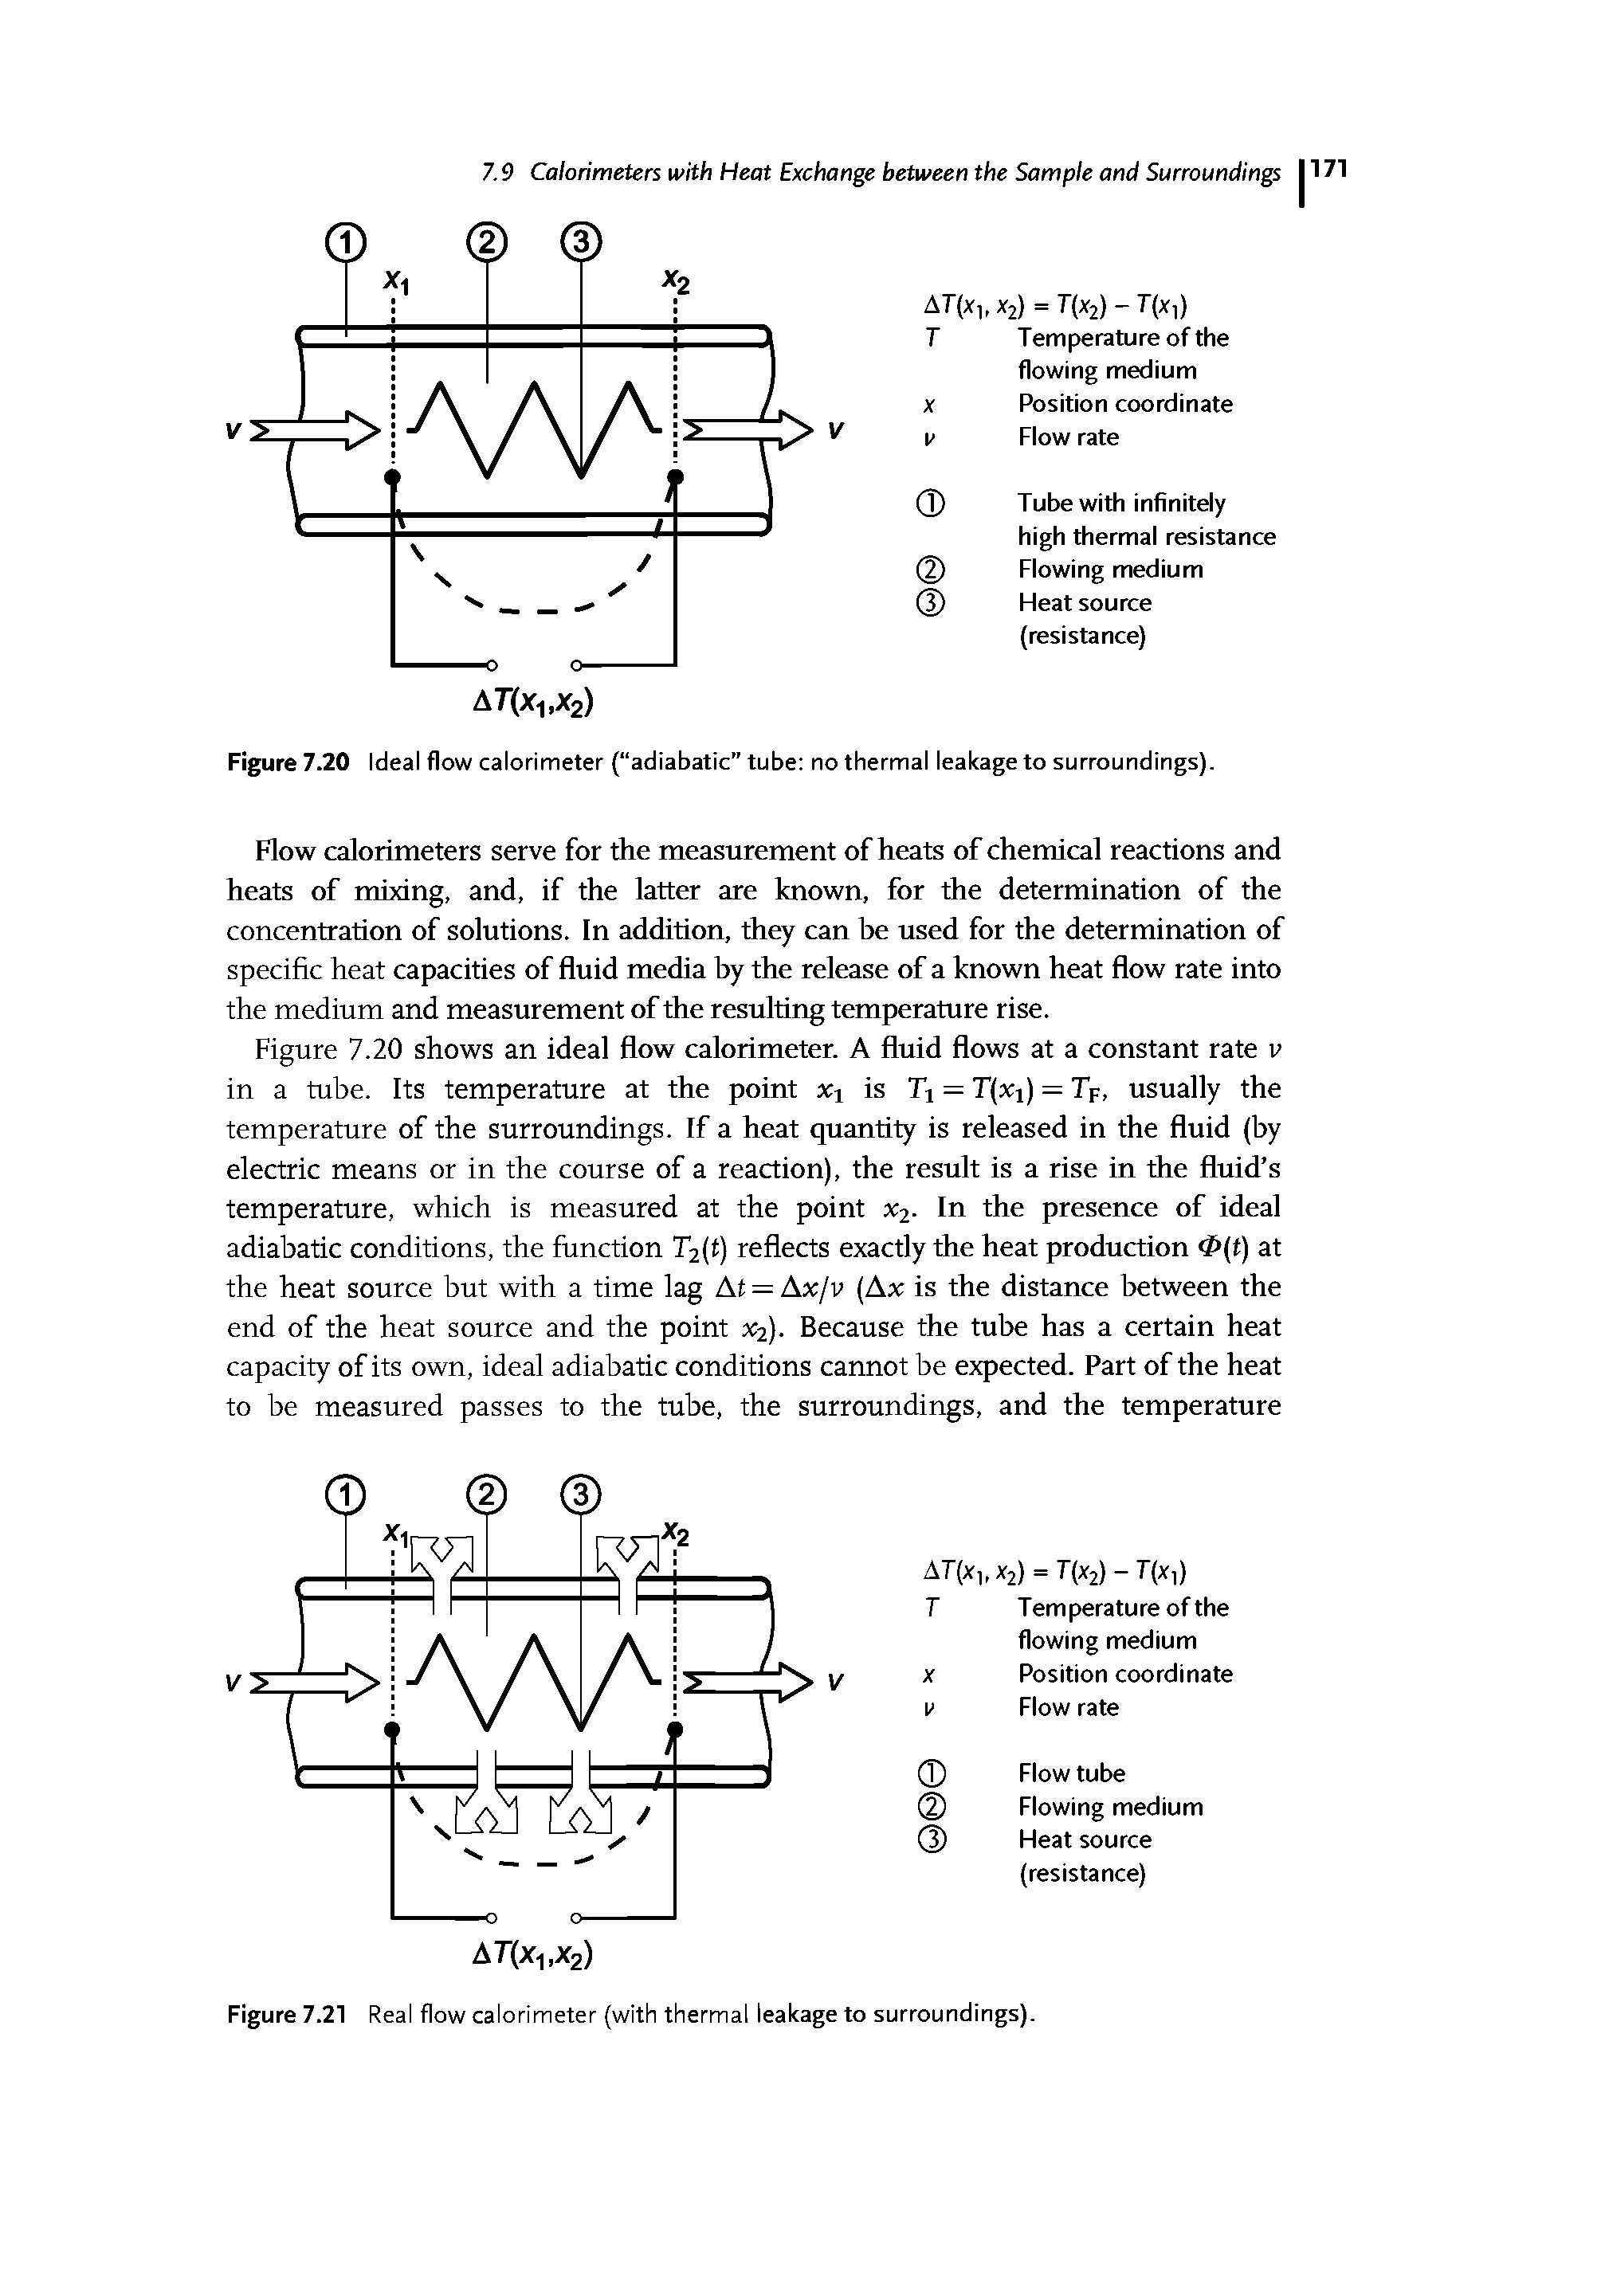 Figure 7.20 Ideal flow calorimeter ( adiabatic" tube no thermal leakage to surroundings).